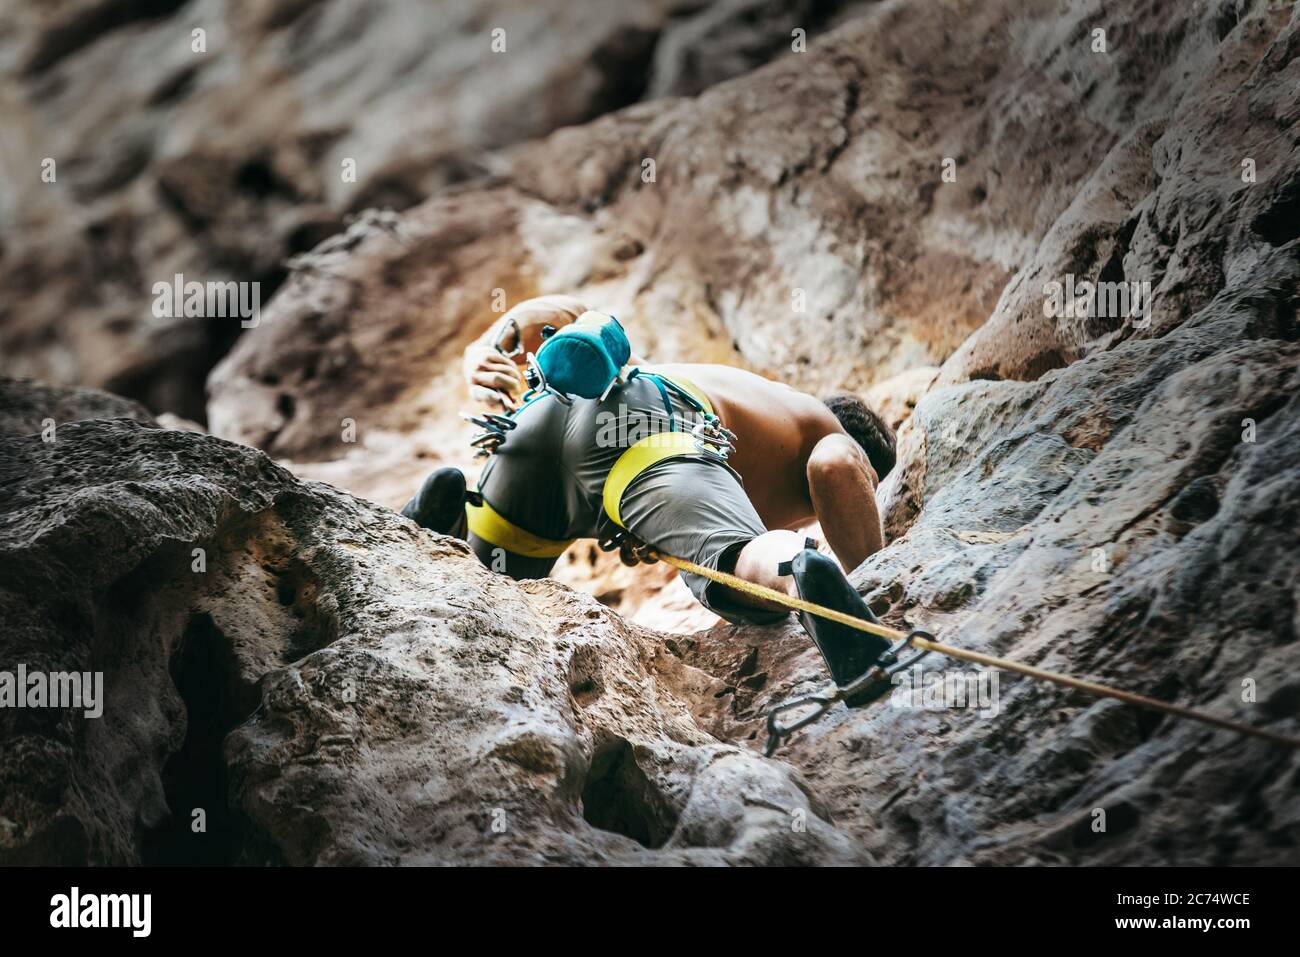 Scalatore di montagna su percorso di arrampicata sulla parete di roccia. Immagine concettuale di tempo attivo. Foto Stock